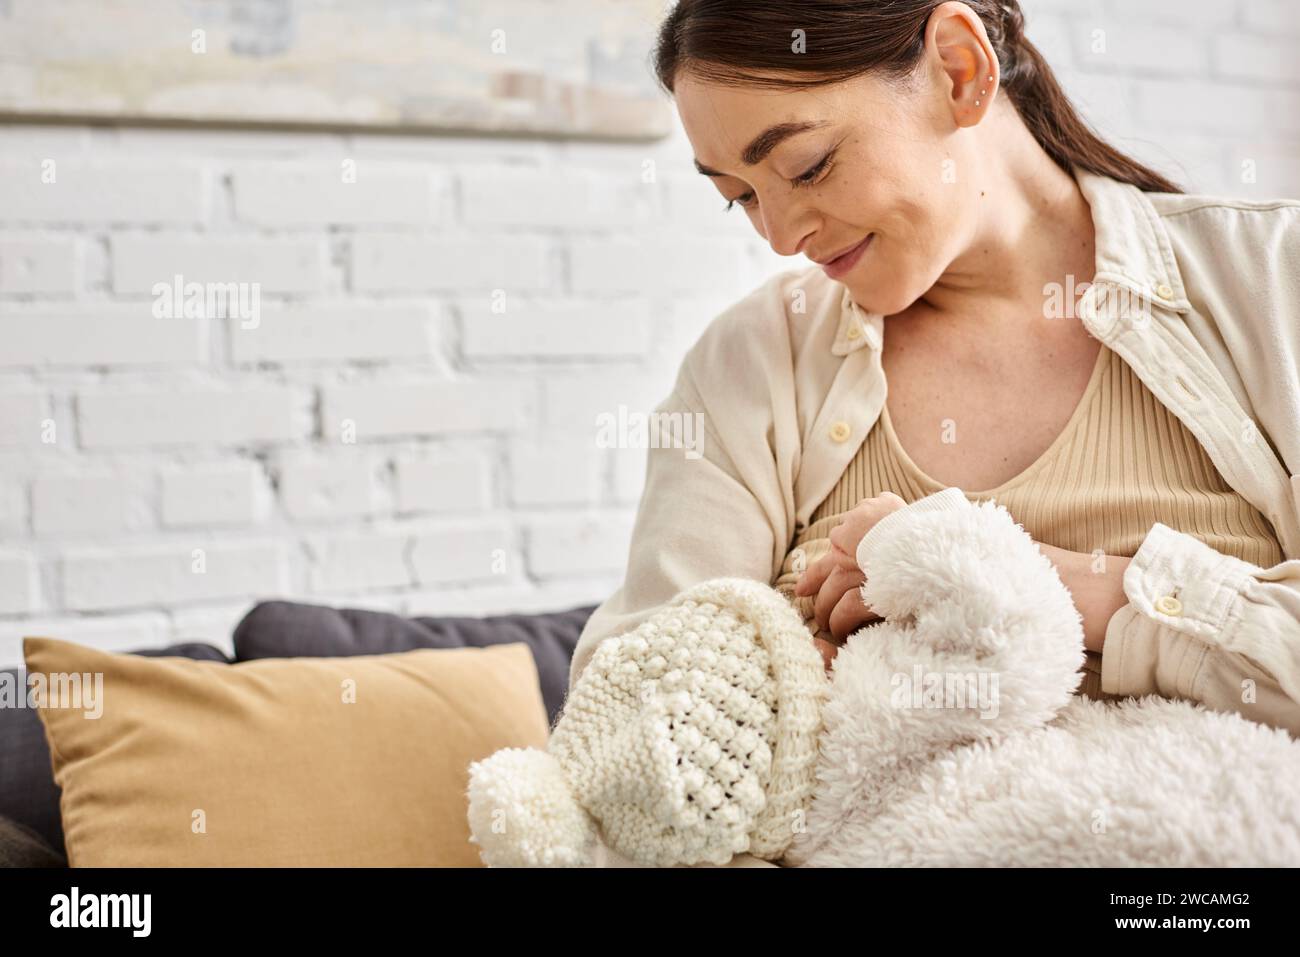 Attraktive fürsorgliche, fröhliche Mutter in kuscheliger Hauswäsche, die ihr neugeborenes Kind stillt, moderne Erziehung Stockfoto